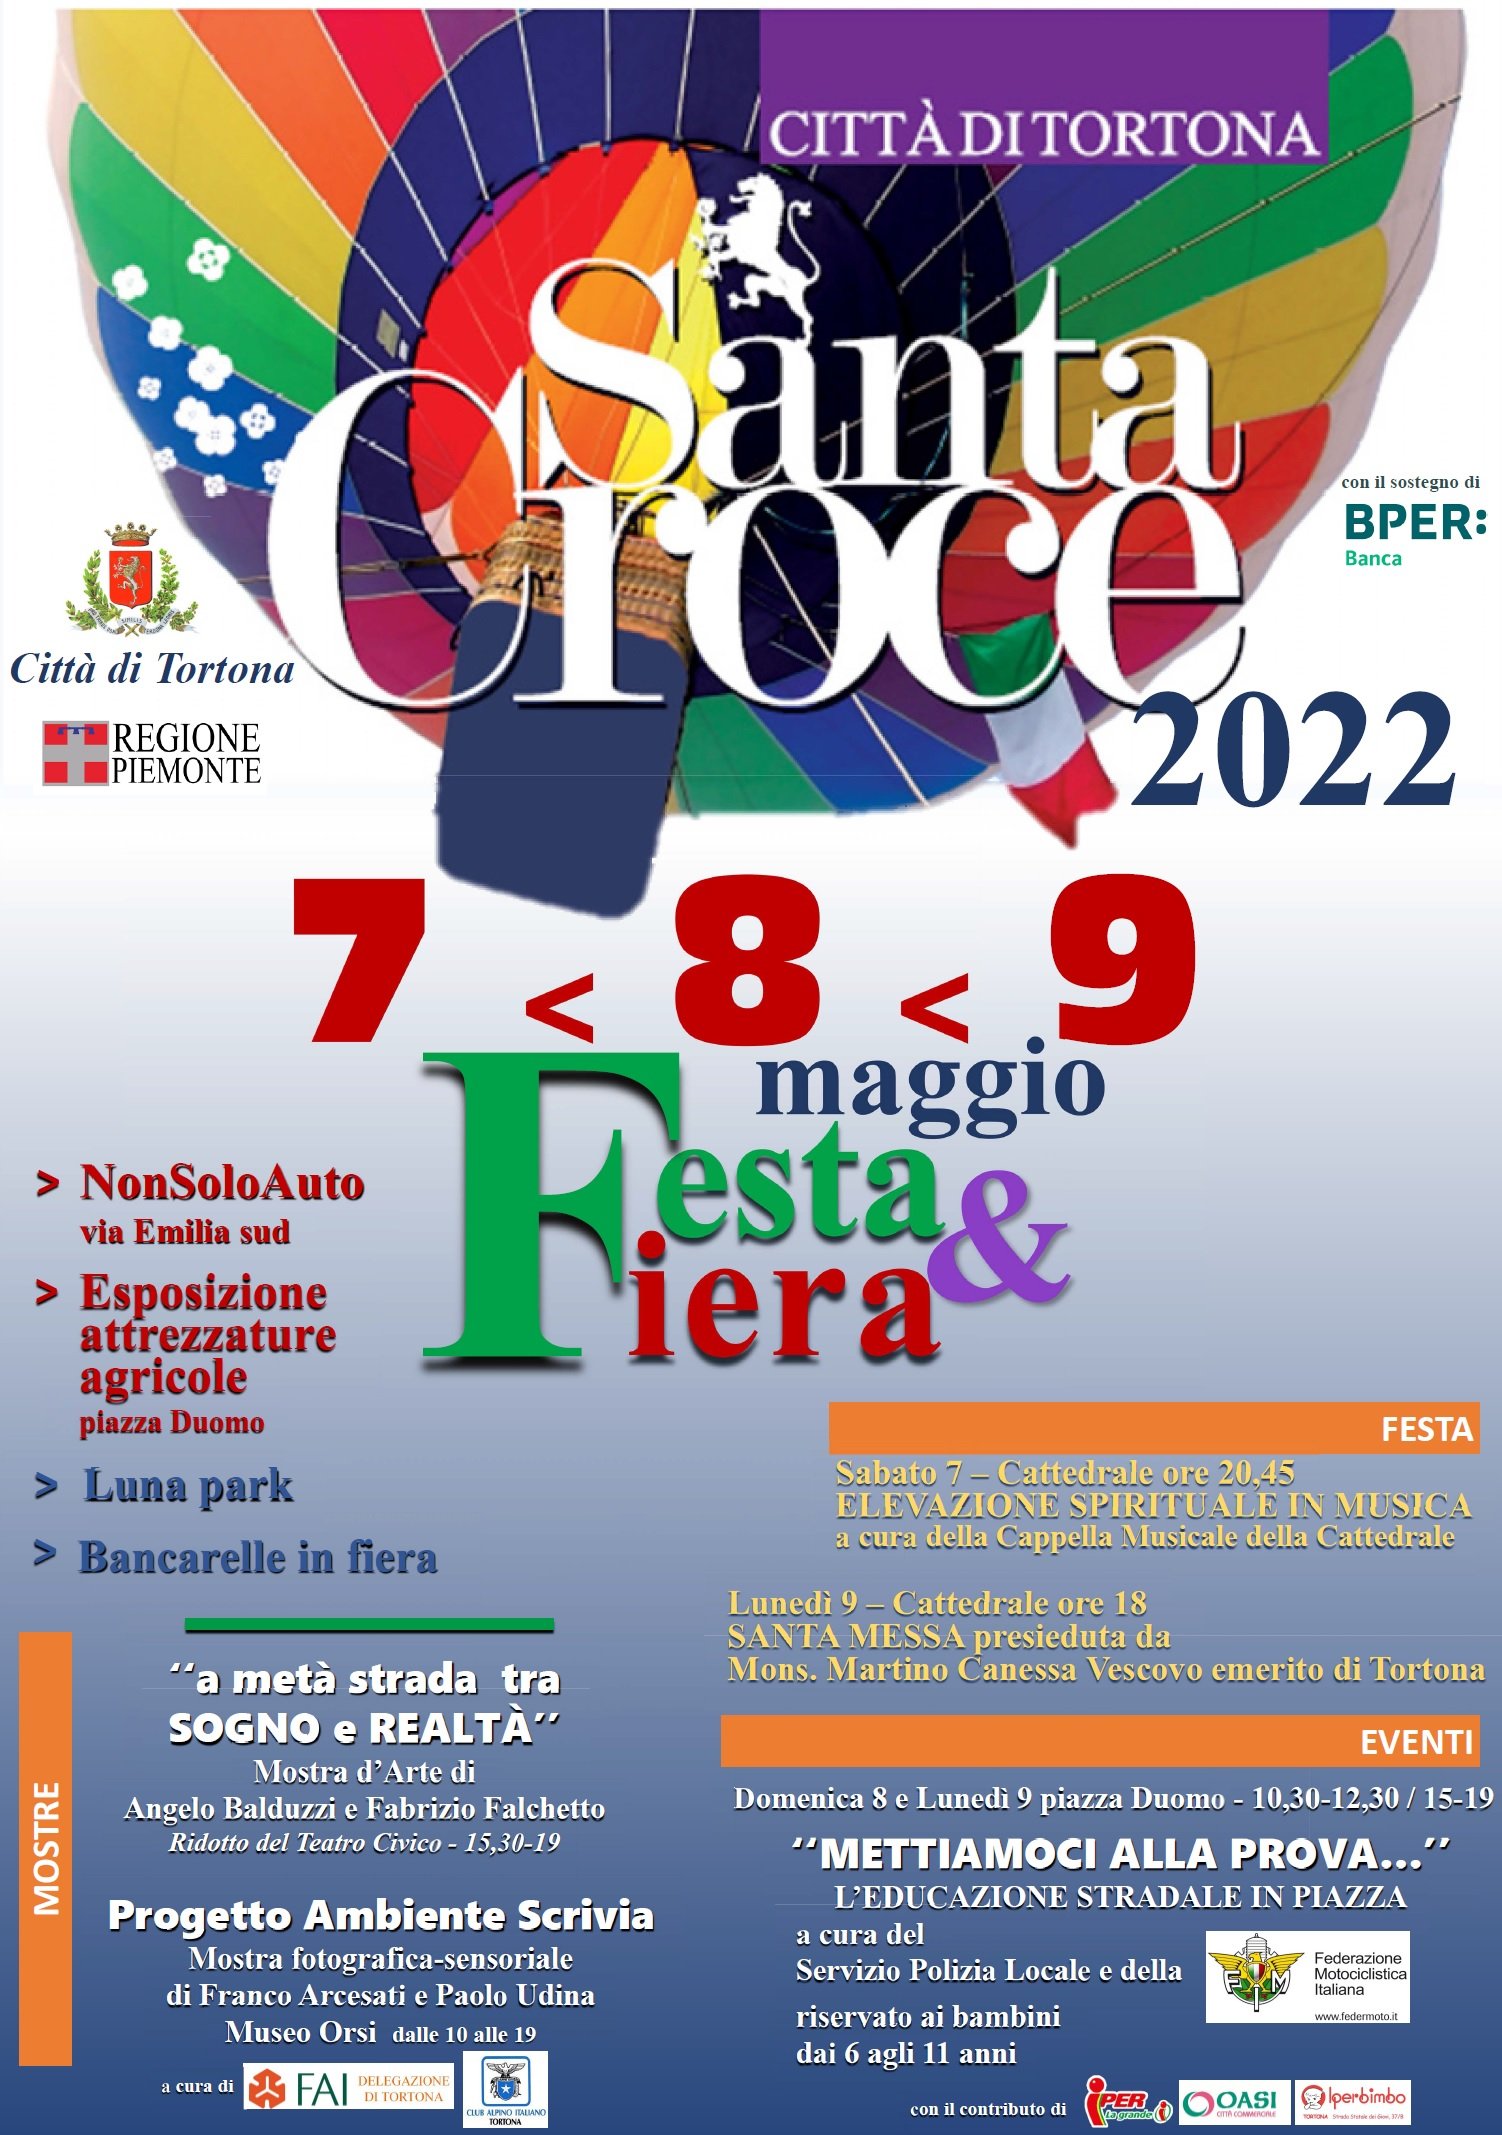 Dal 7 al 9 maggio la la Fiera & Festa di Santa Croce a Tortona